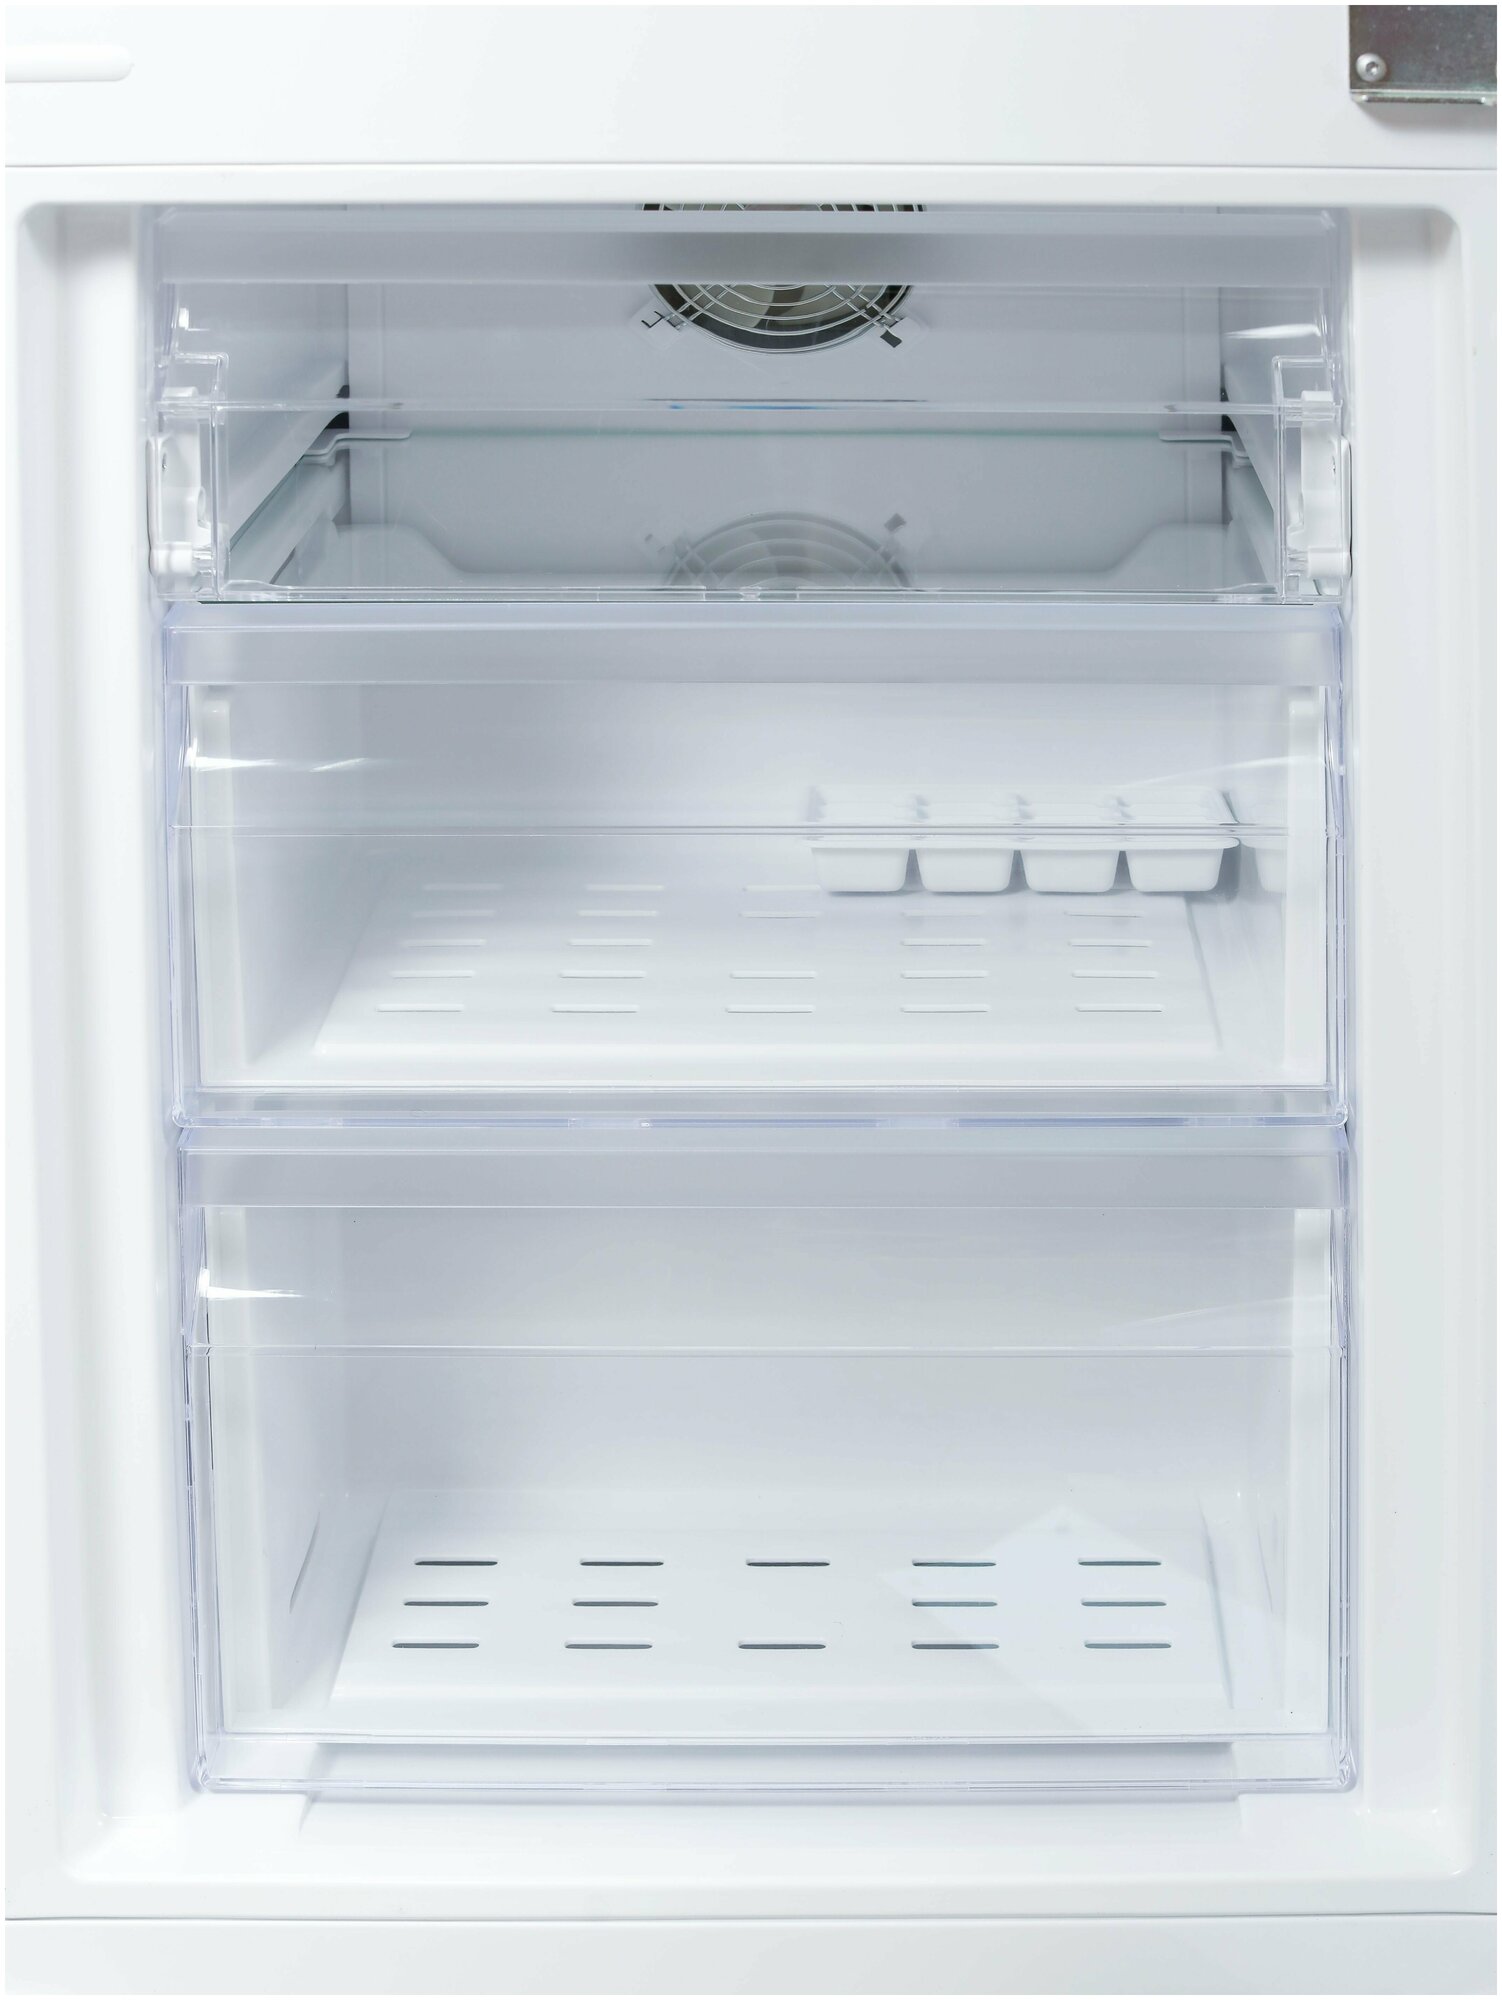 Холодильник Vestel VBI2761, 2 камеры, 2 двери, No Frost, белый, 54x177x54,5 см